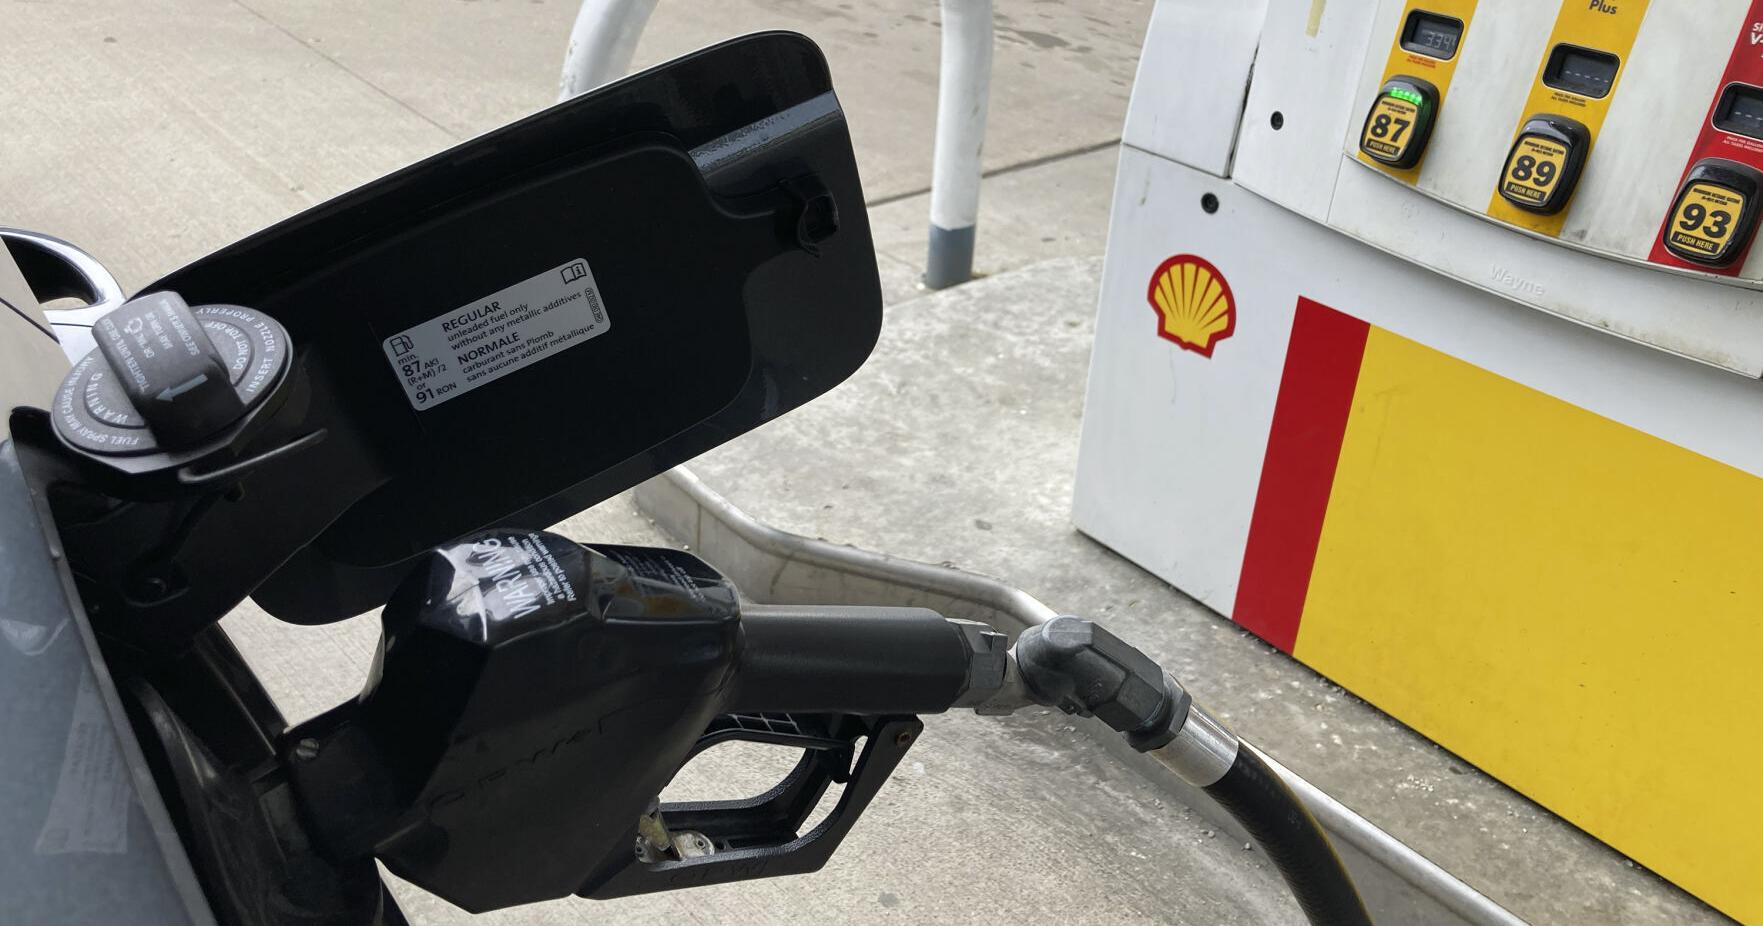 Gas prices rose at start of summer travel season